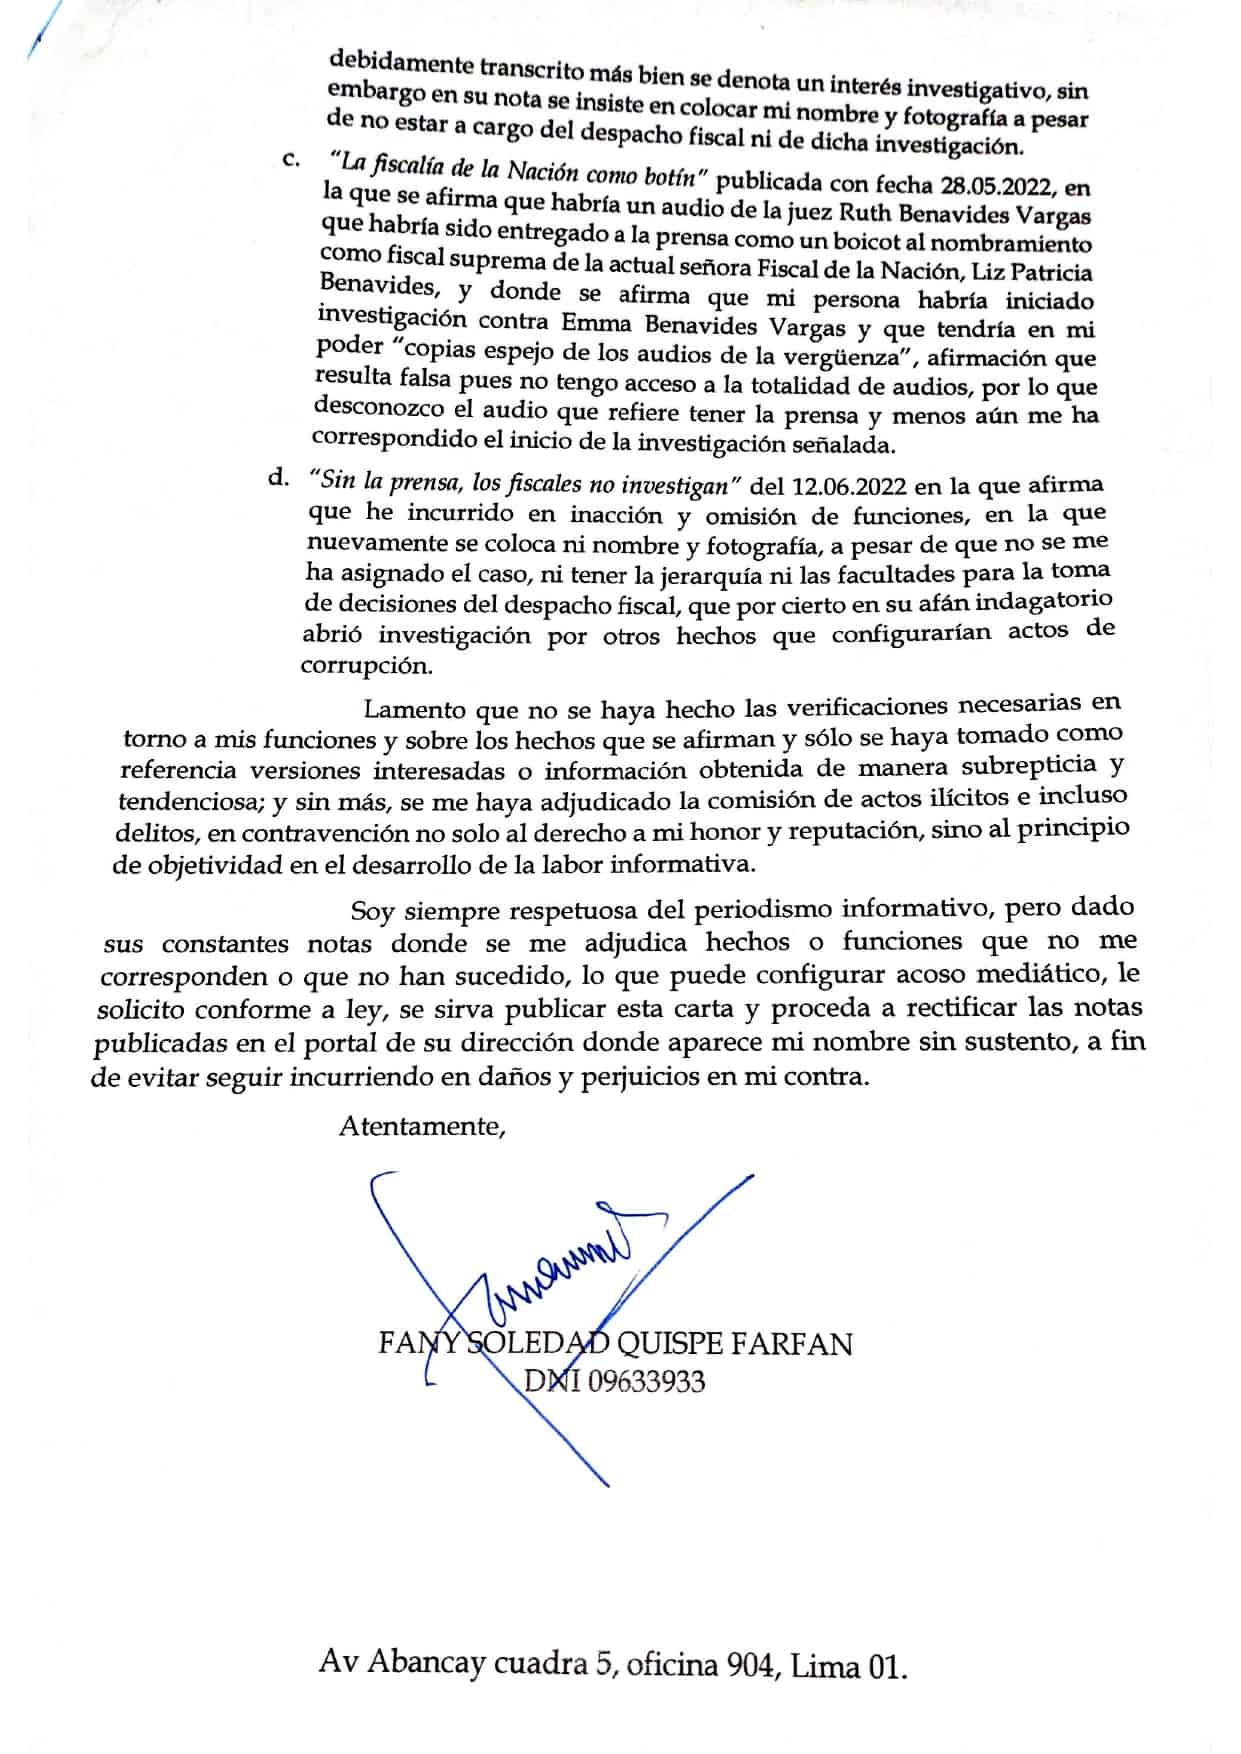 Carta Notarial - Fany Soledad Quispe 03